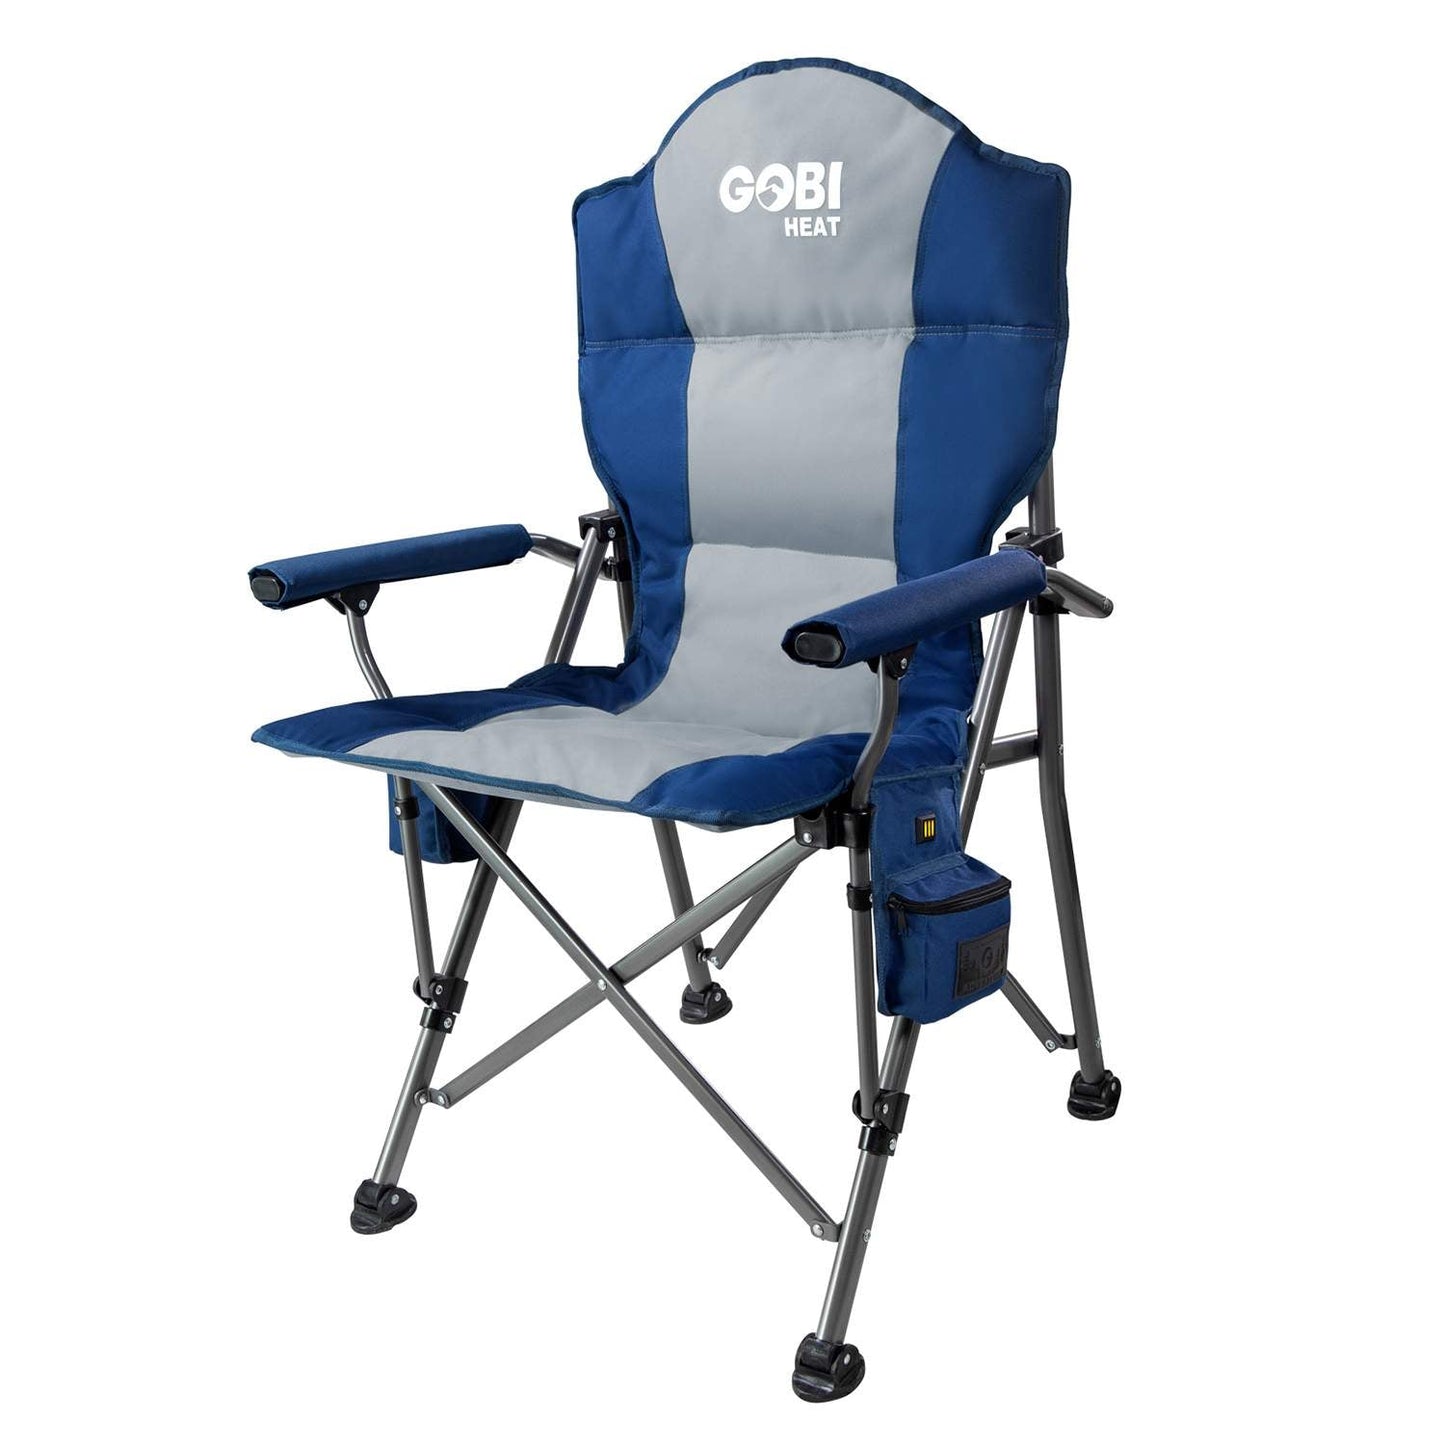 Midnight Blue Terrain Heated Camping Chair